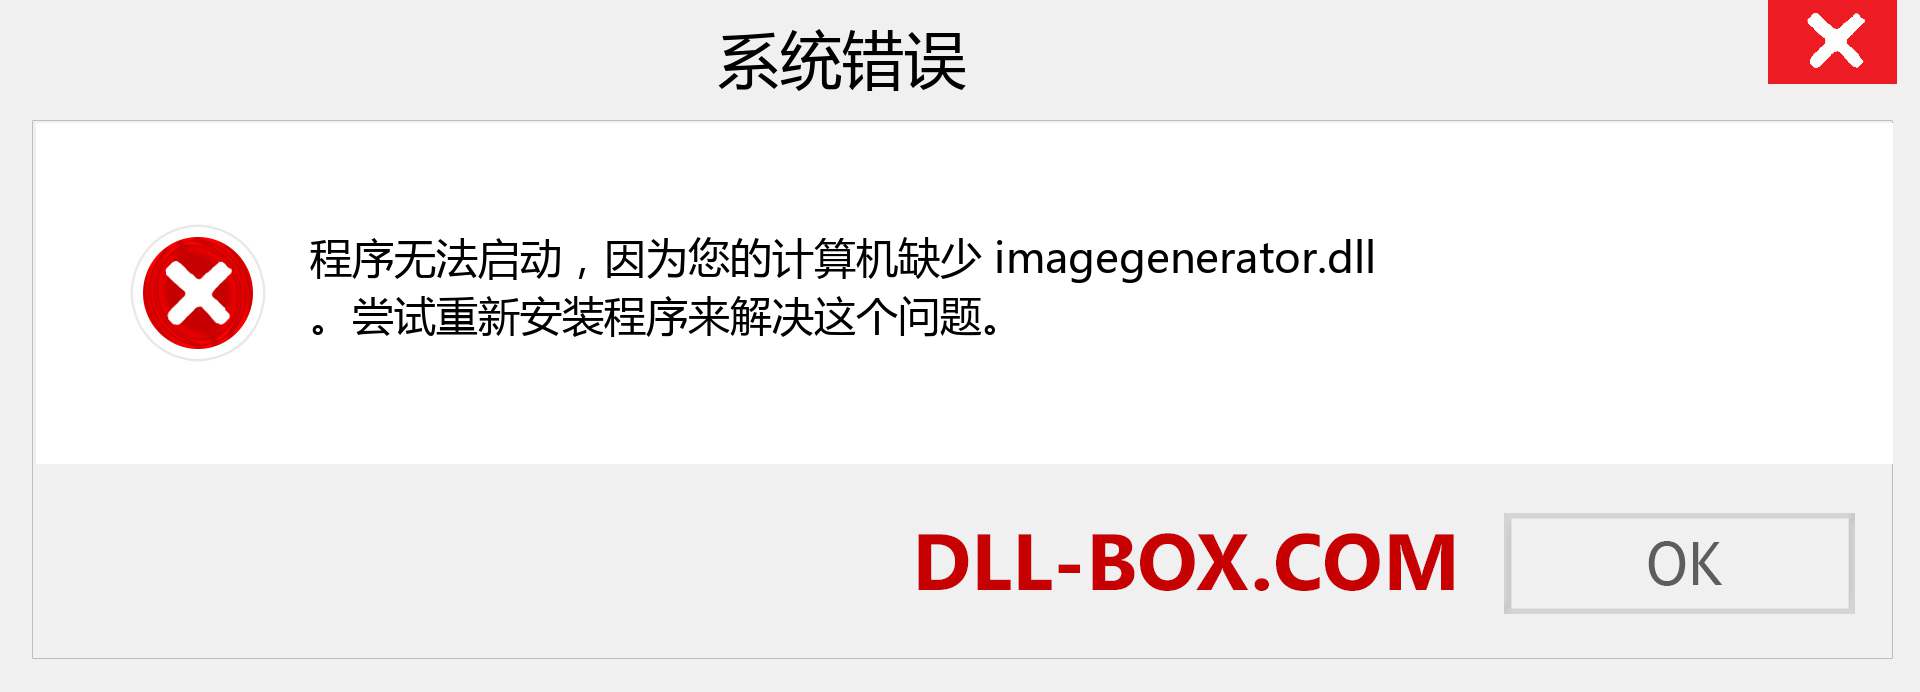 imagegenerator.dll 文件丢失？。 适用于 Windows 7、8、10 的下载 - 修复 Windows、照片、图像上的 imagegenerator dll 丢失错误